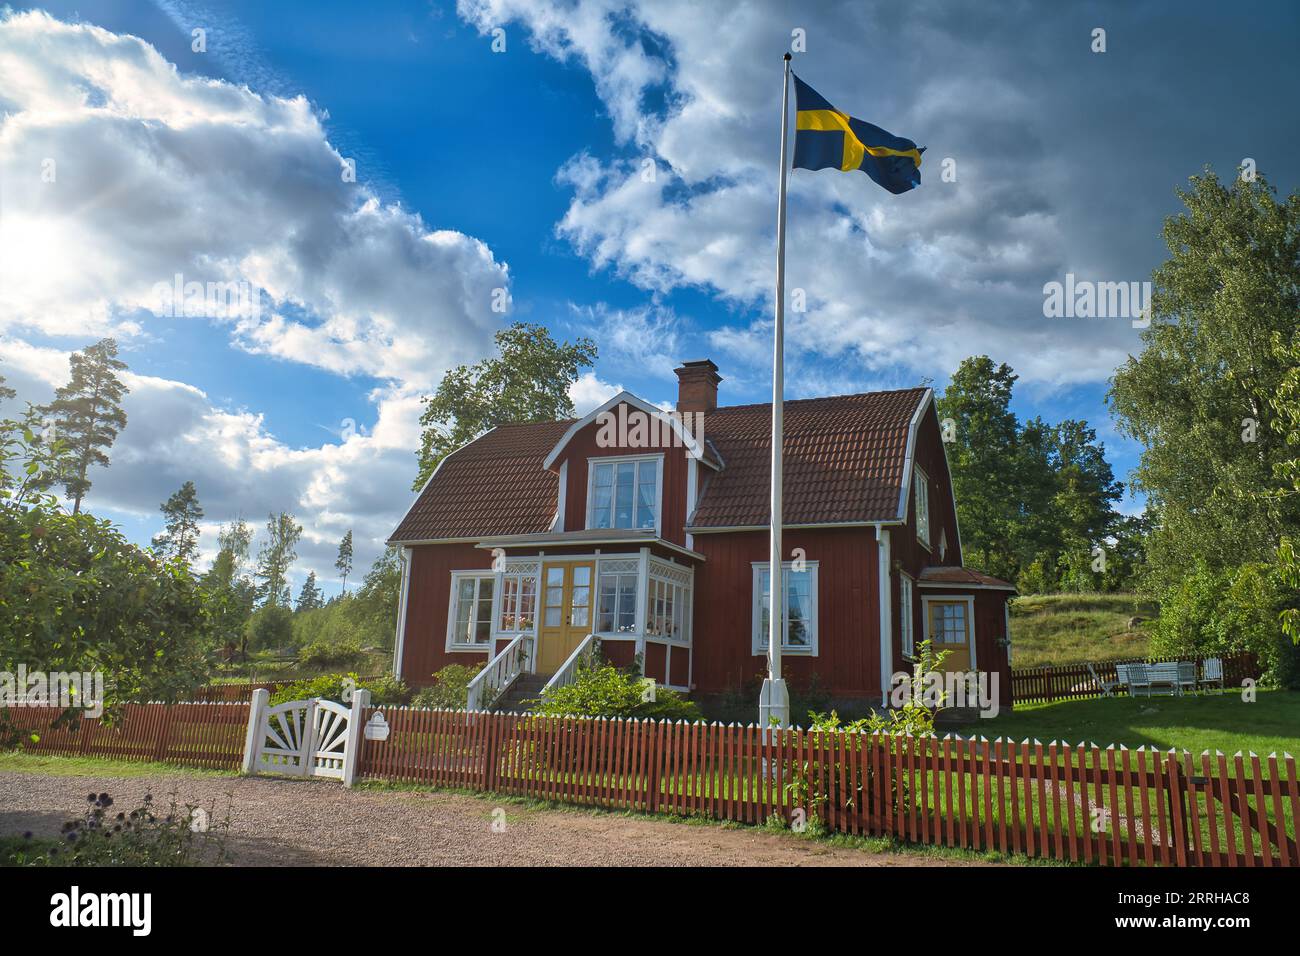 Ein typisches rot-weißes schwedisches Haus im Kleinen. Weißes Gartentor, brauner Zaun. Fahnenmast mit schwedischer Flagge. Grüner Rasen im Garten. Bäume im Hintergrund Stockfoto